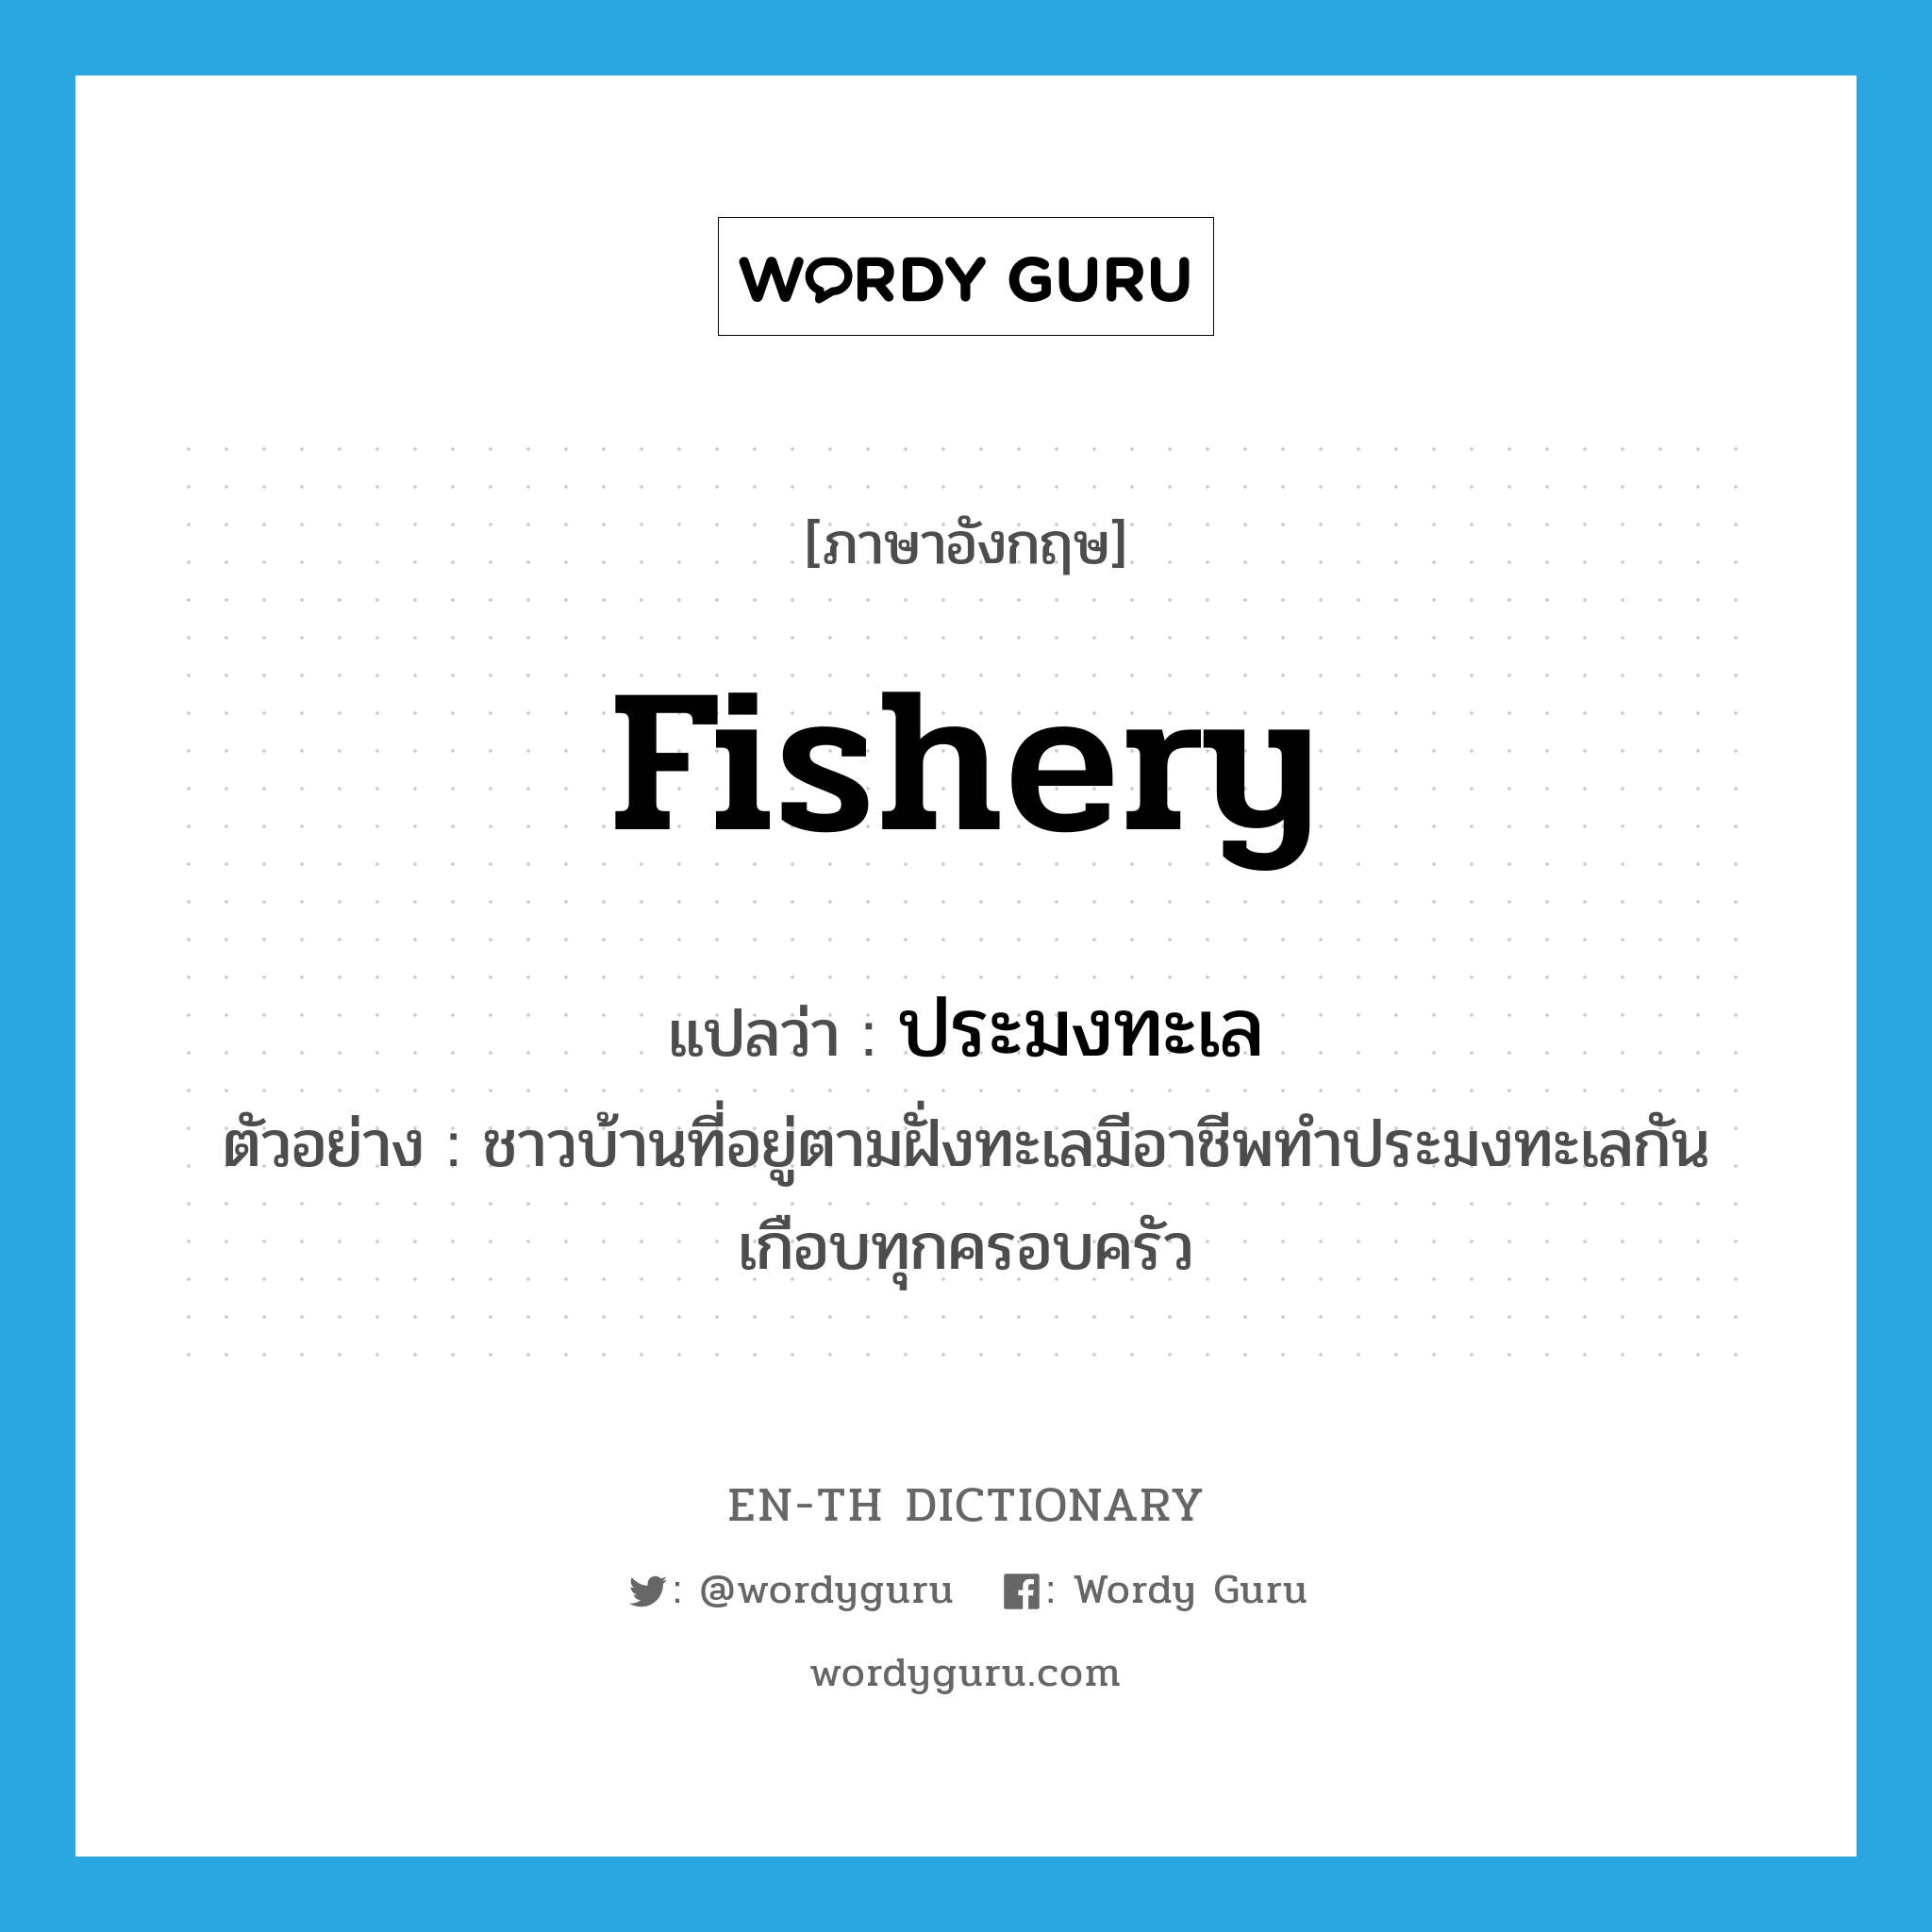 fishery แปลว่า?, คำศัพท์ภาษาอังกฤษ fishery แปลว่า ประมงทะเล ประเภท N ตัวอย่าง ชาวบ้านที่อยู่ตามฝั่งทะเลมีอาชีพทำประมงทะเลกันเกือบทุกครอบครัว หมวด N